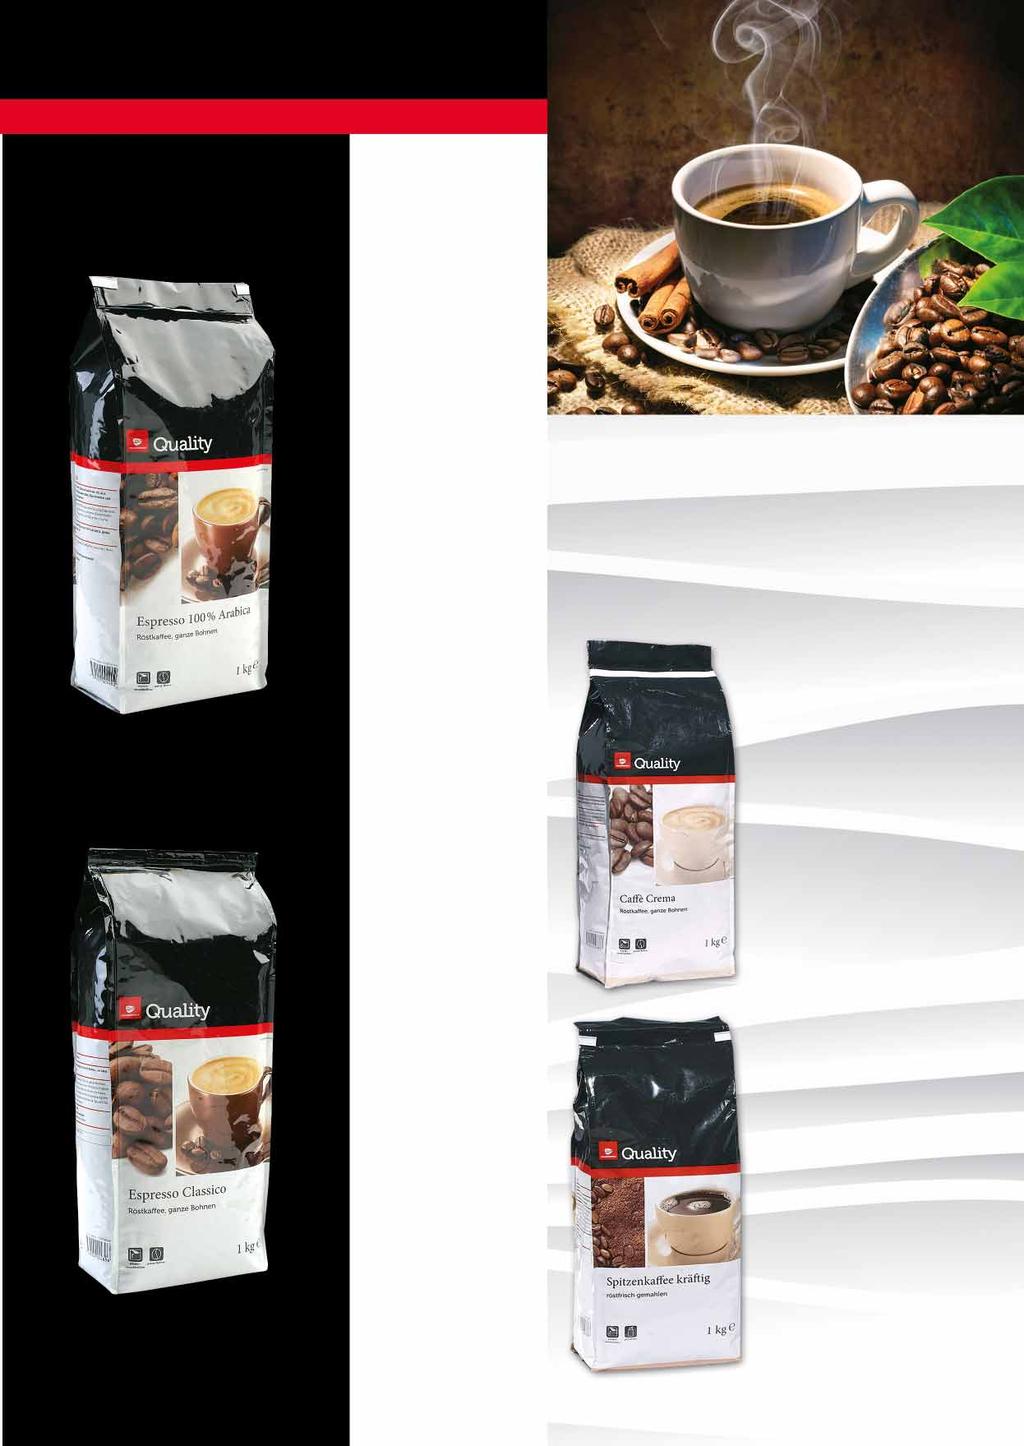 KAWY, HERBATY, SOKI KAWA ZIARNISTA ESPRESSO 100% ARABICA 1 KG 43699081 8312 Kawy Quality idealnie nadają się do przygotowywania tradycyjnej kawy oraz kawy mrożonej.